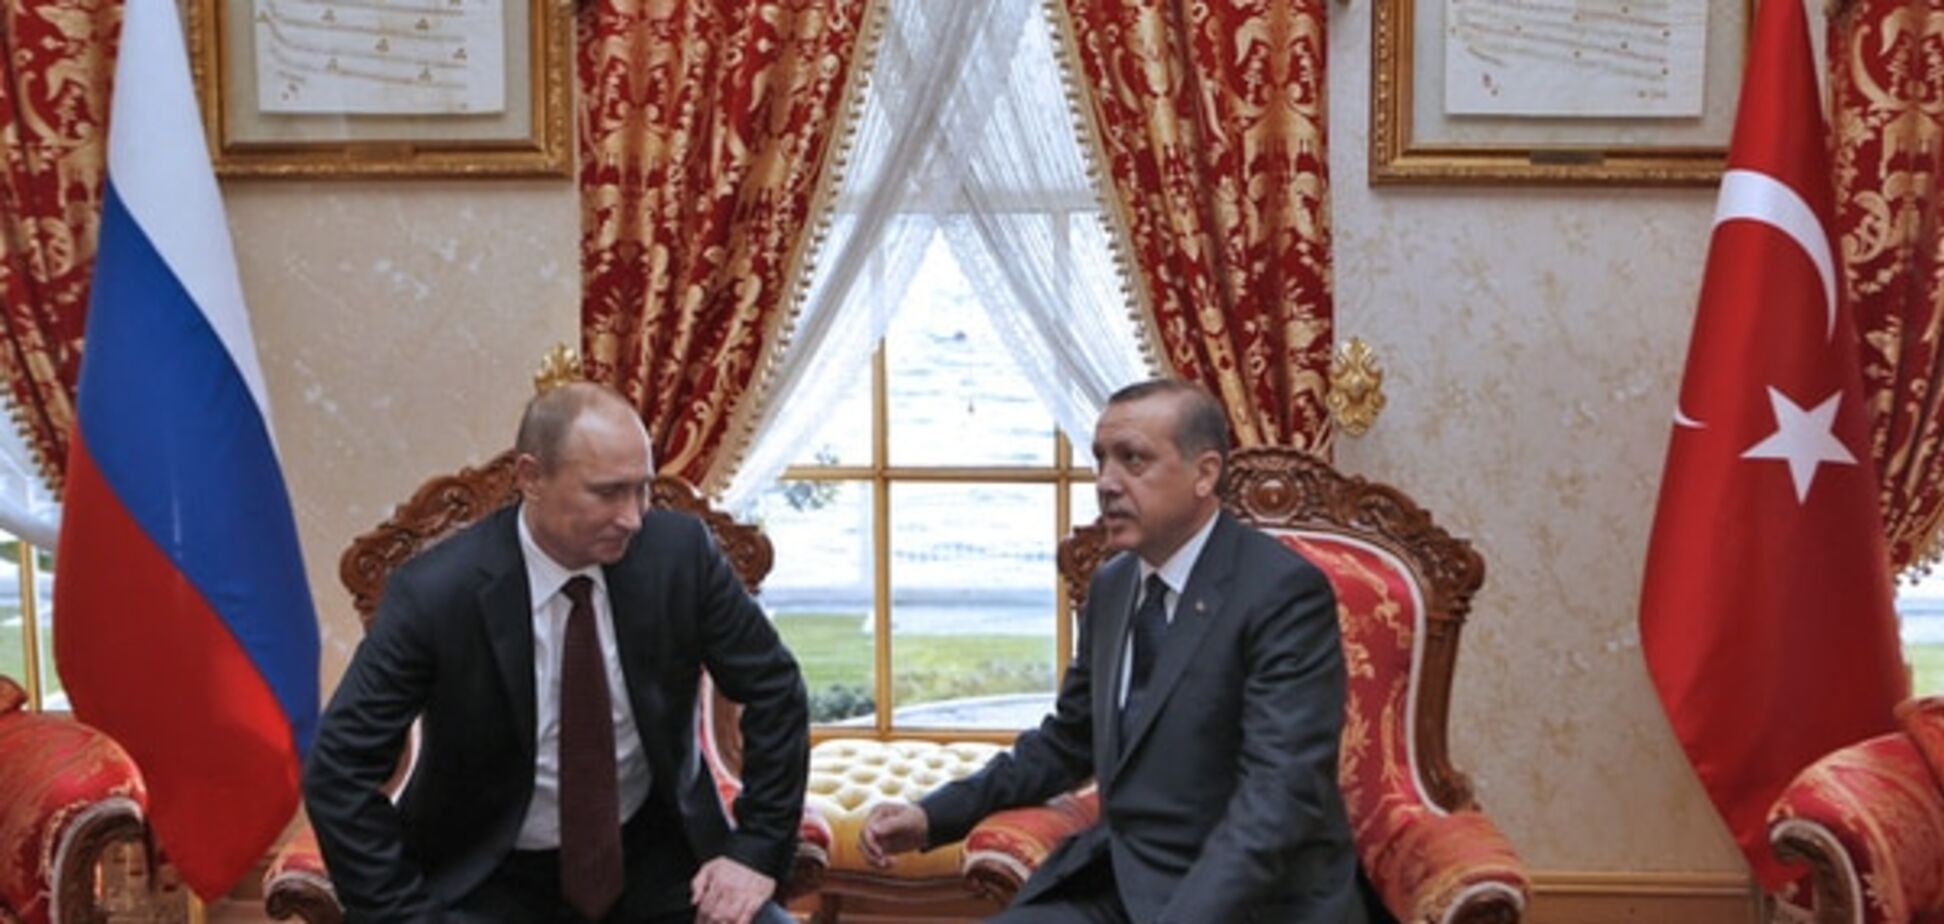 Турция ответит на российские санкции 'козырным тузом в рукаве' - журналист